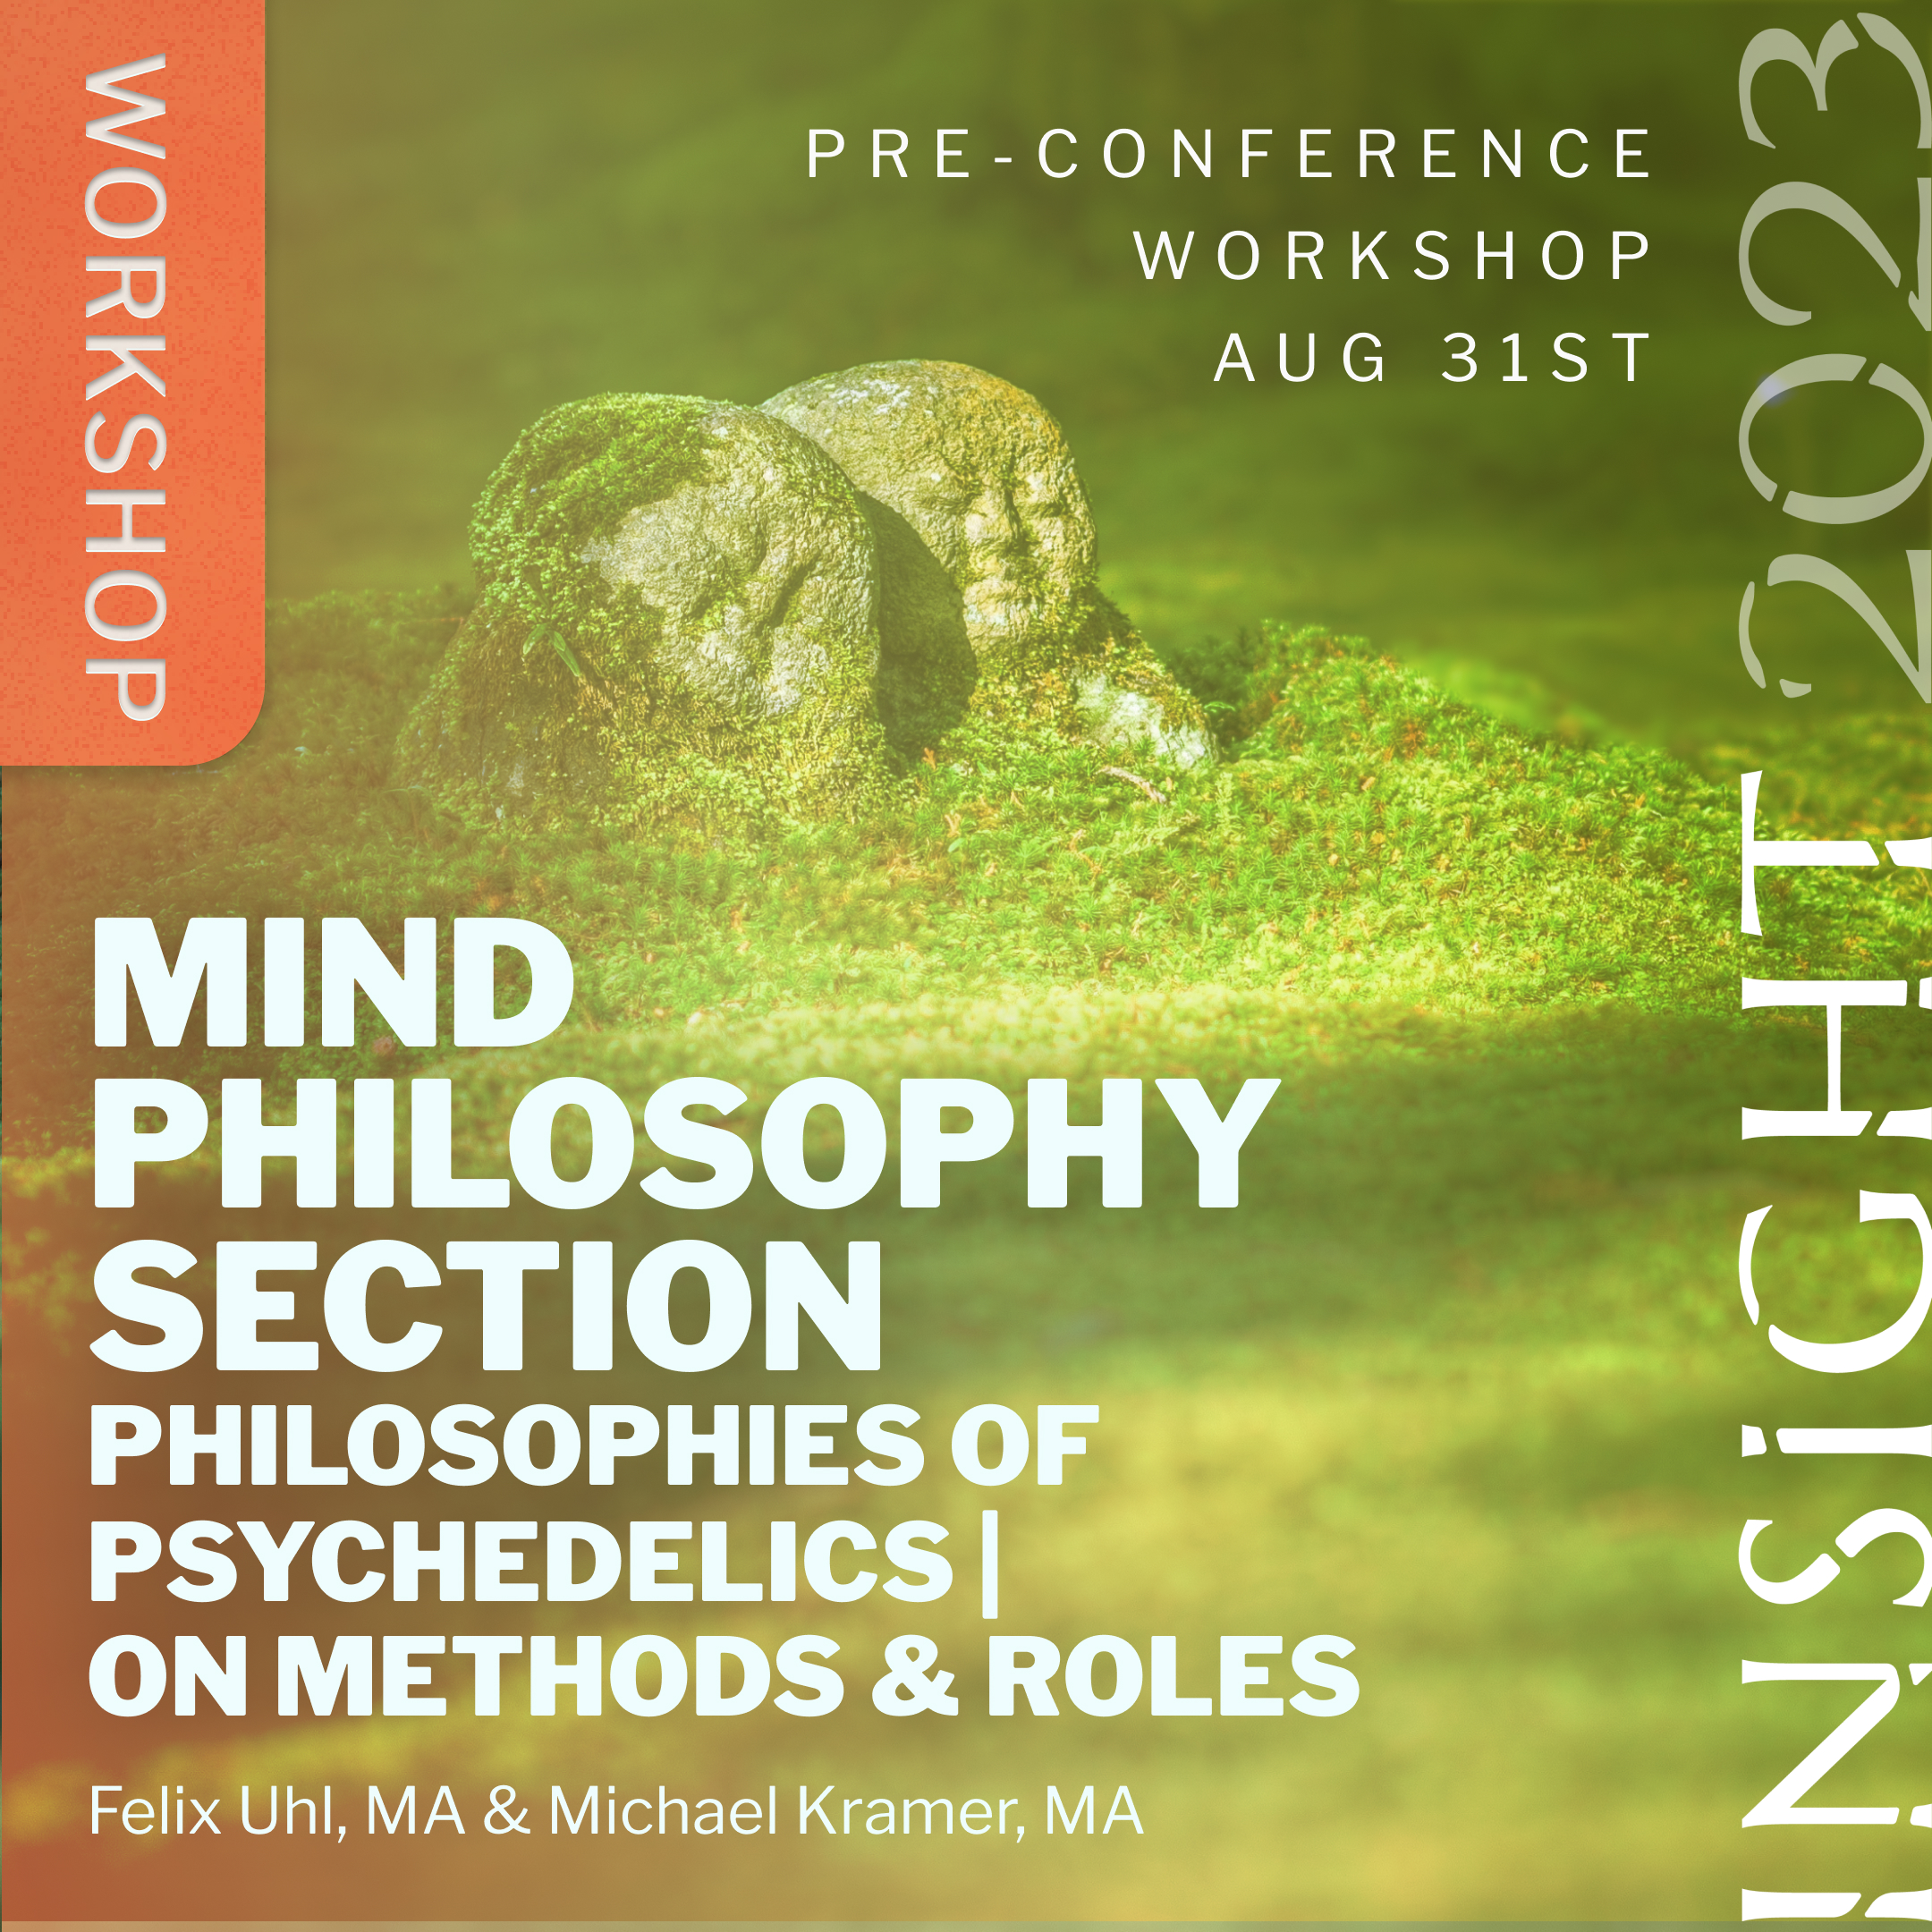 image of mind philosophy workshop